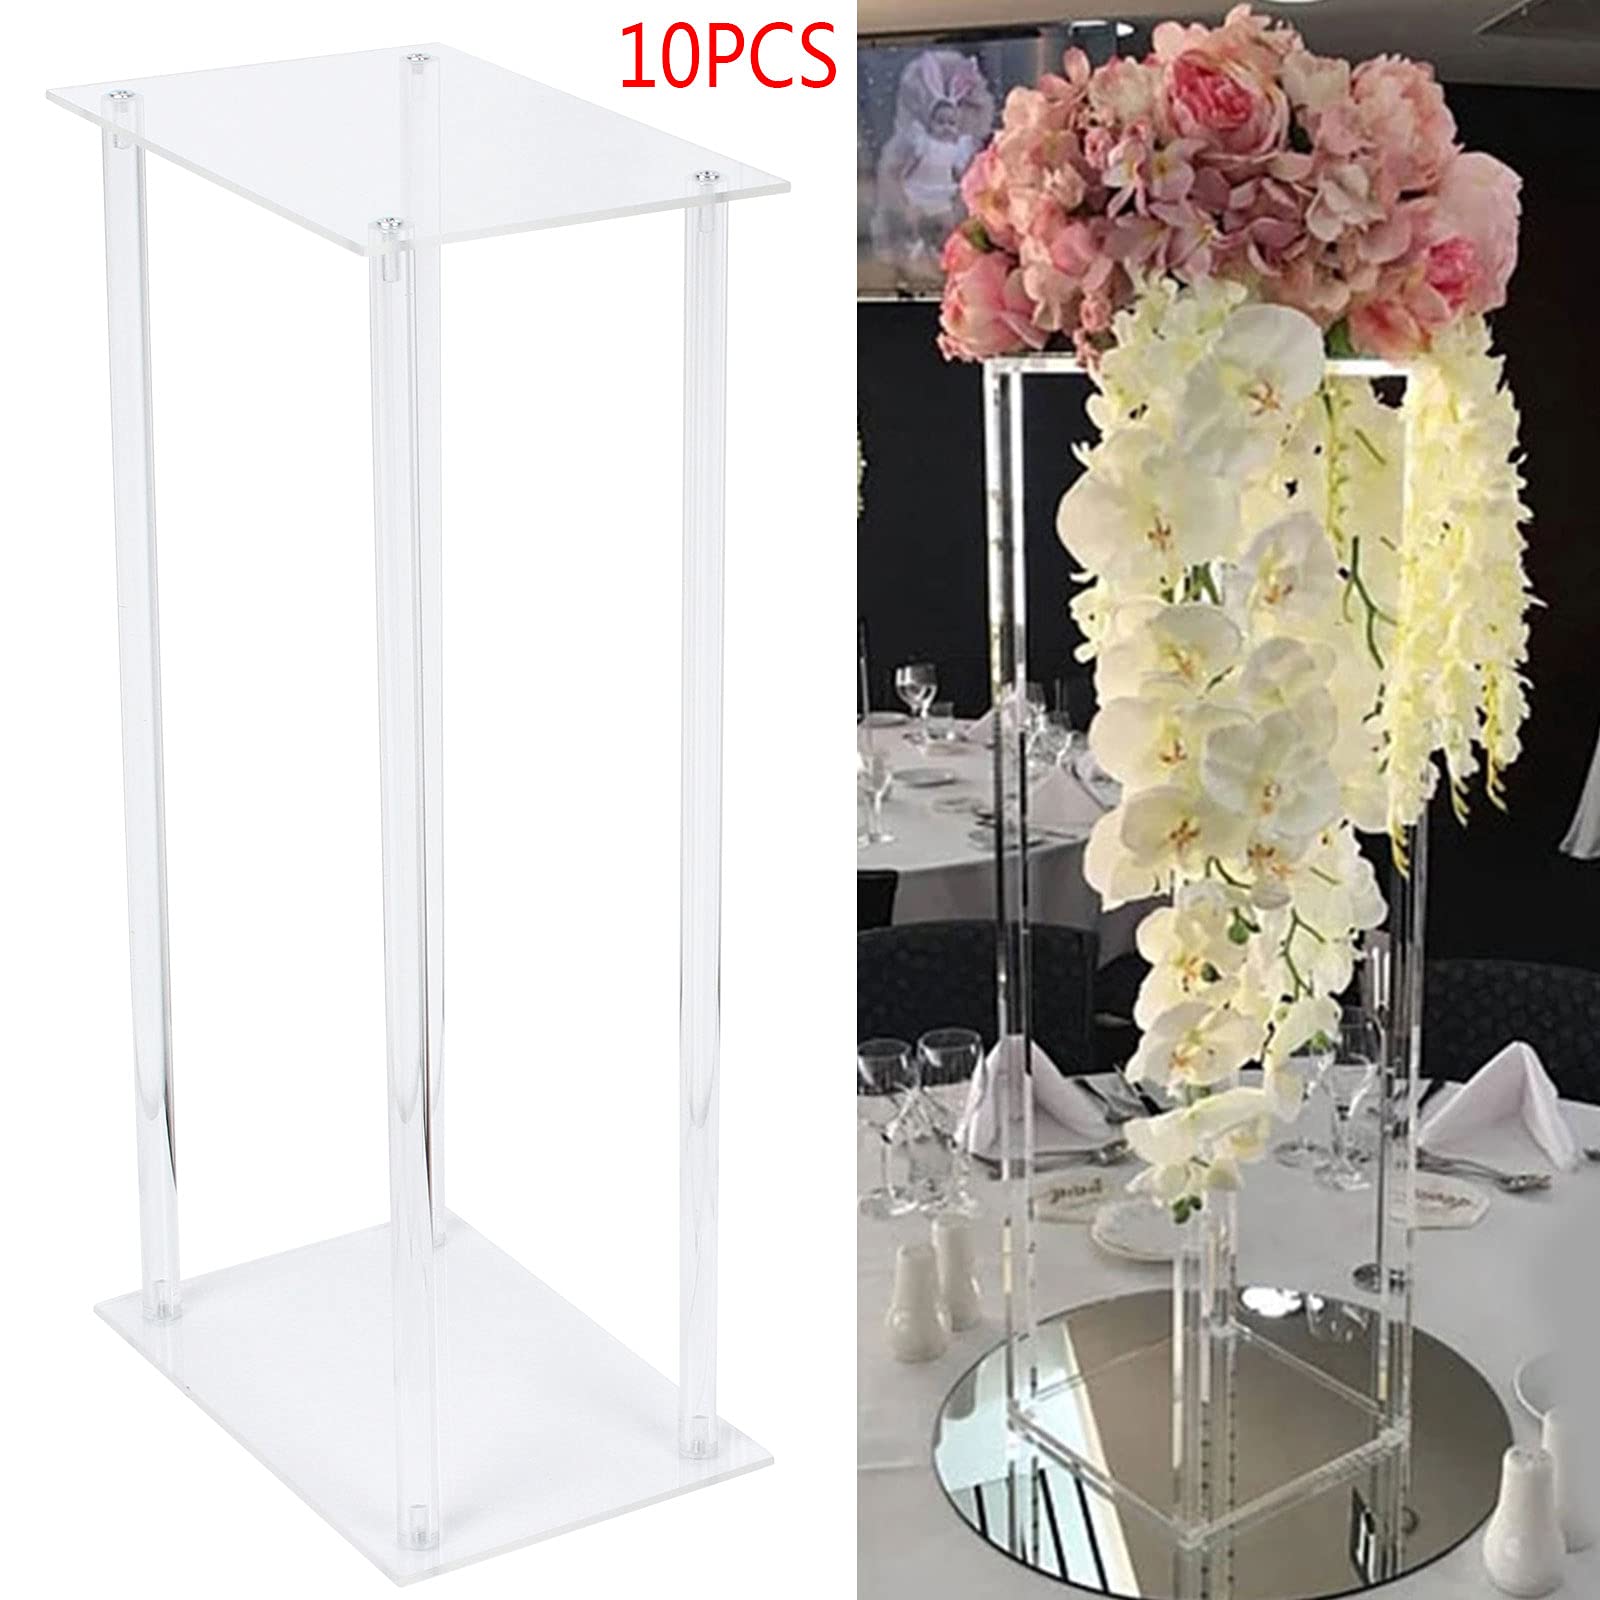  60 cm di altezza, supporto per fiori, decorazione da tavolo, per matrimoni, feste in casa, anniversari, compleanni, 10 pezzi